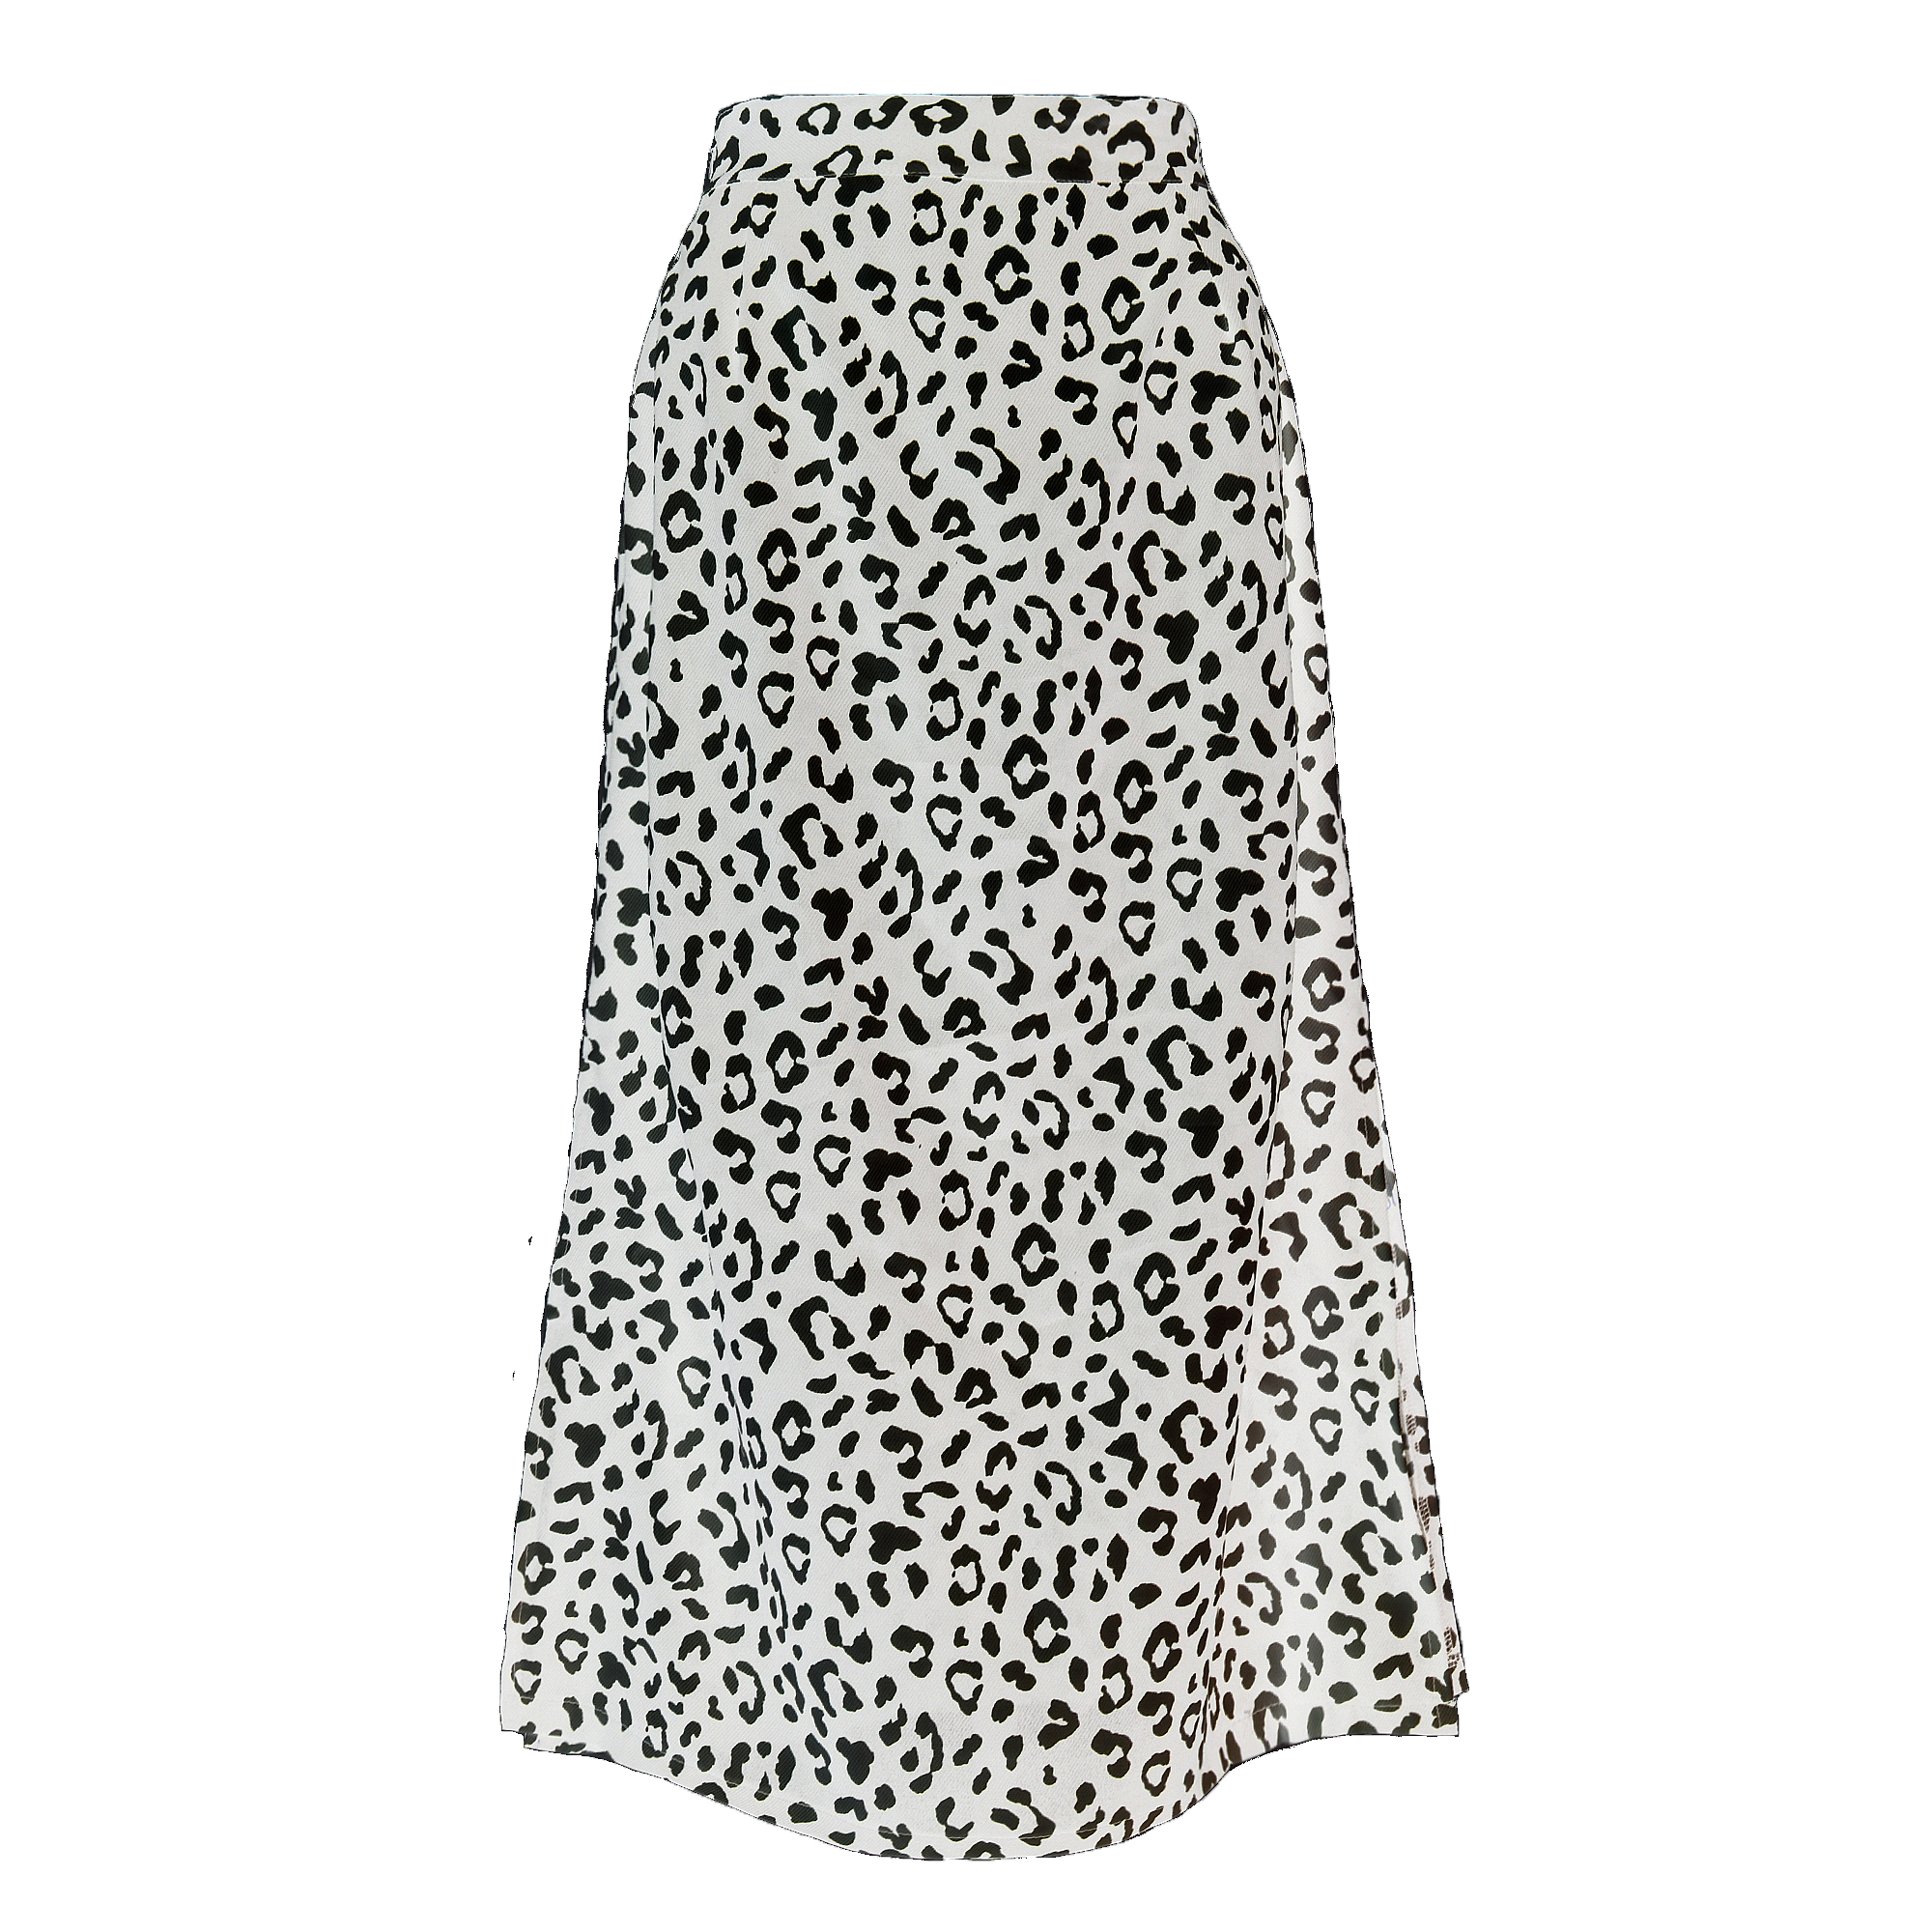 Leopard Dot Print Yüksək Moda Elastik Bel Maksi Qadın Etekləri